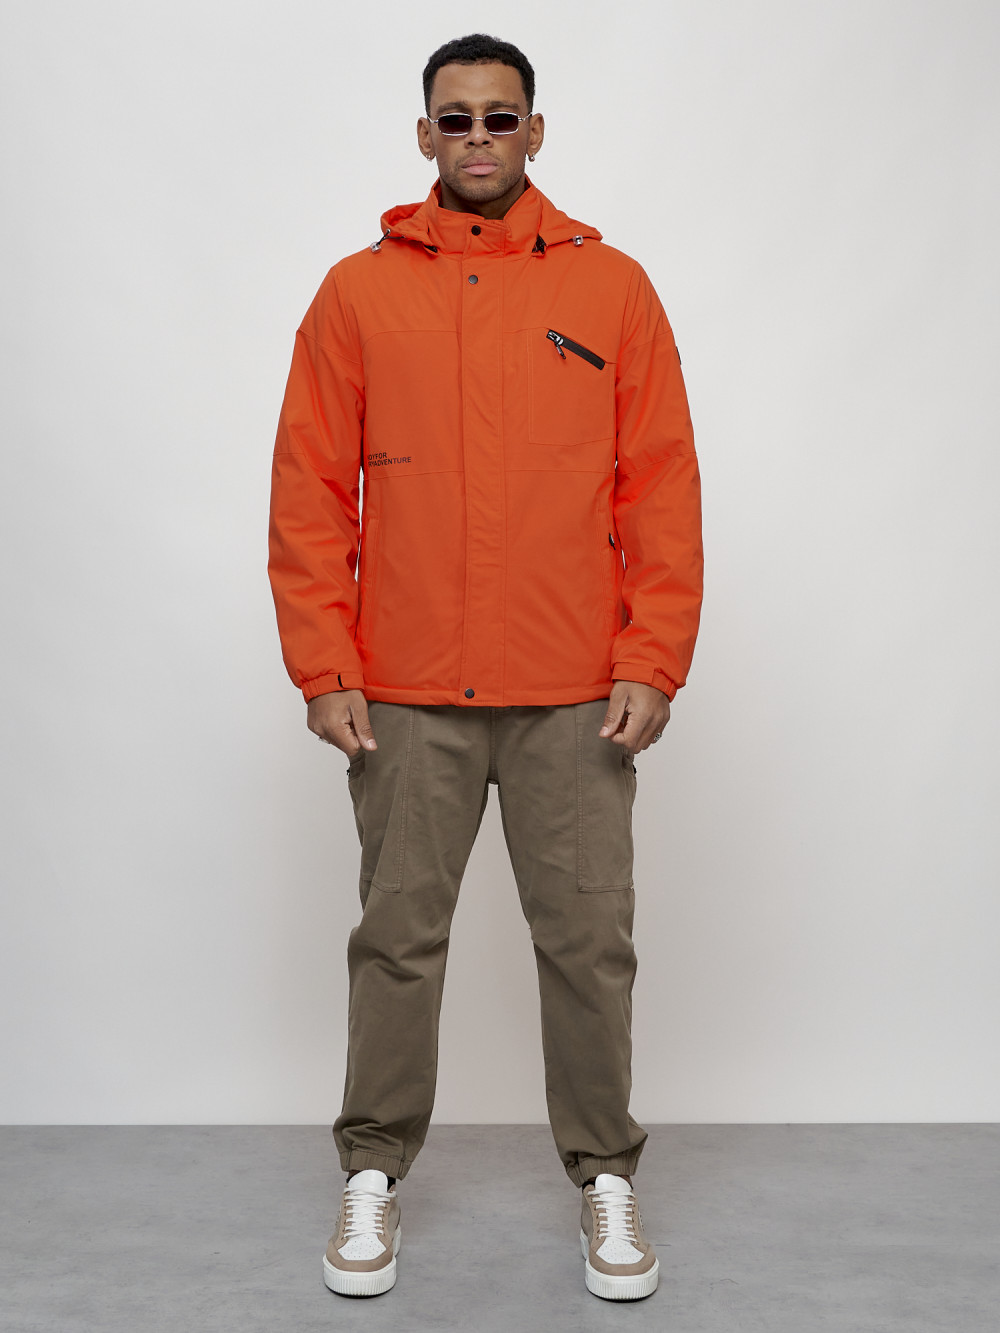 Купить оптом Куртка спортивная мужская весенняя с капюшоном оранжевого цвета 88021O в Казани